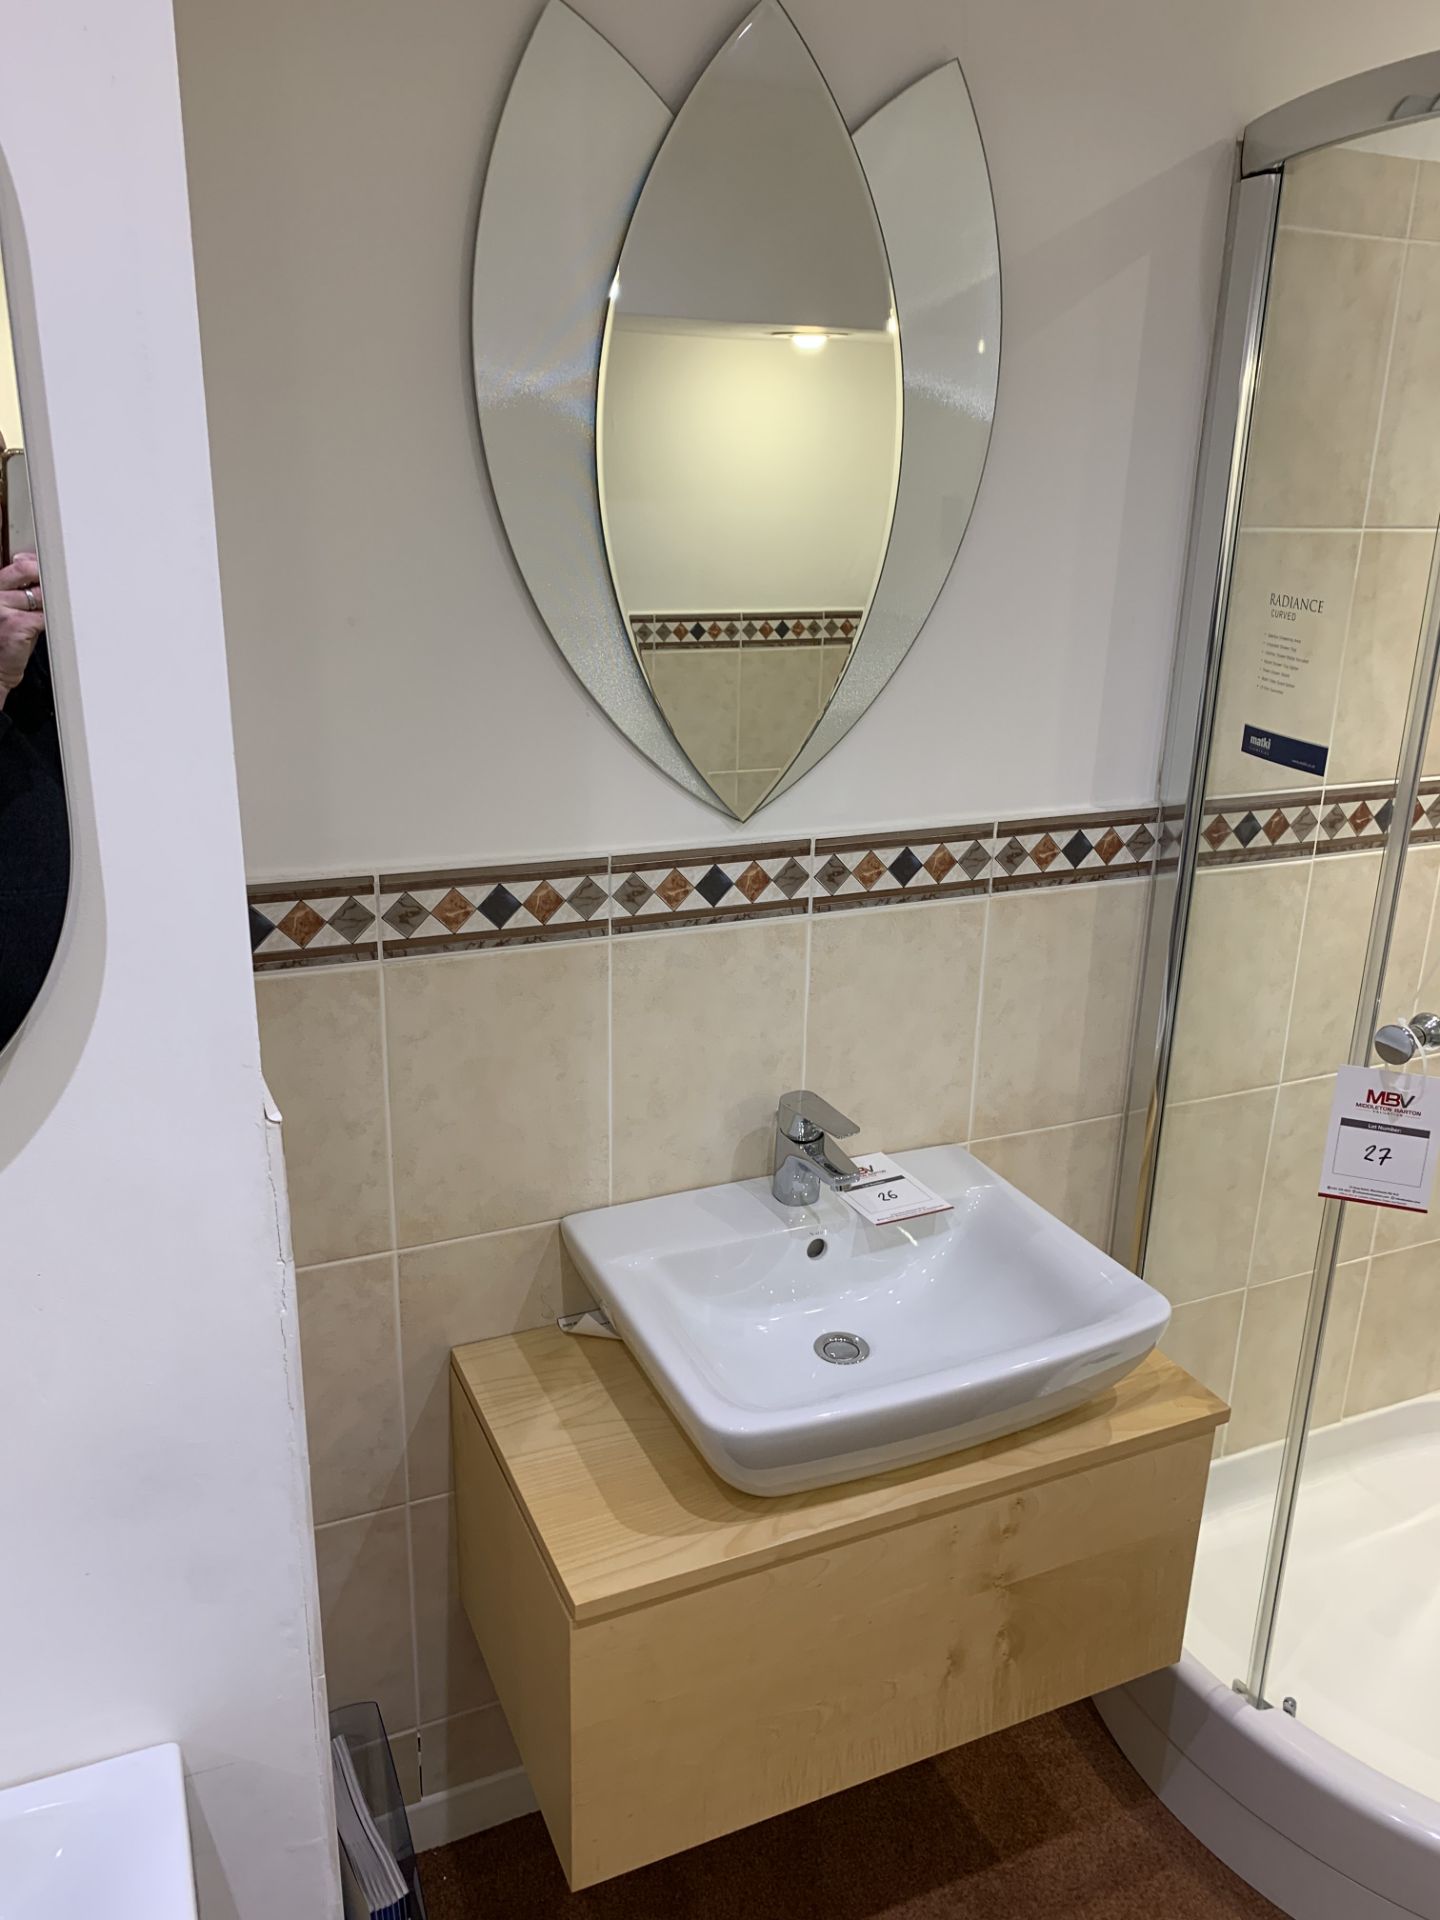 Display bathroom sink on floating pedestal with mirror